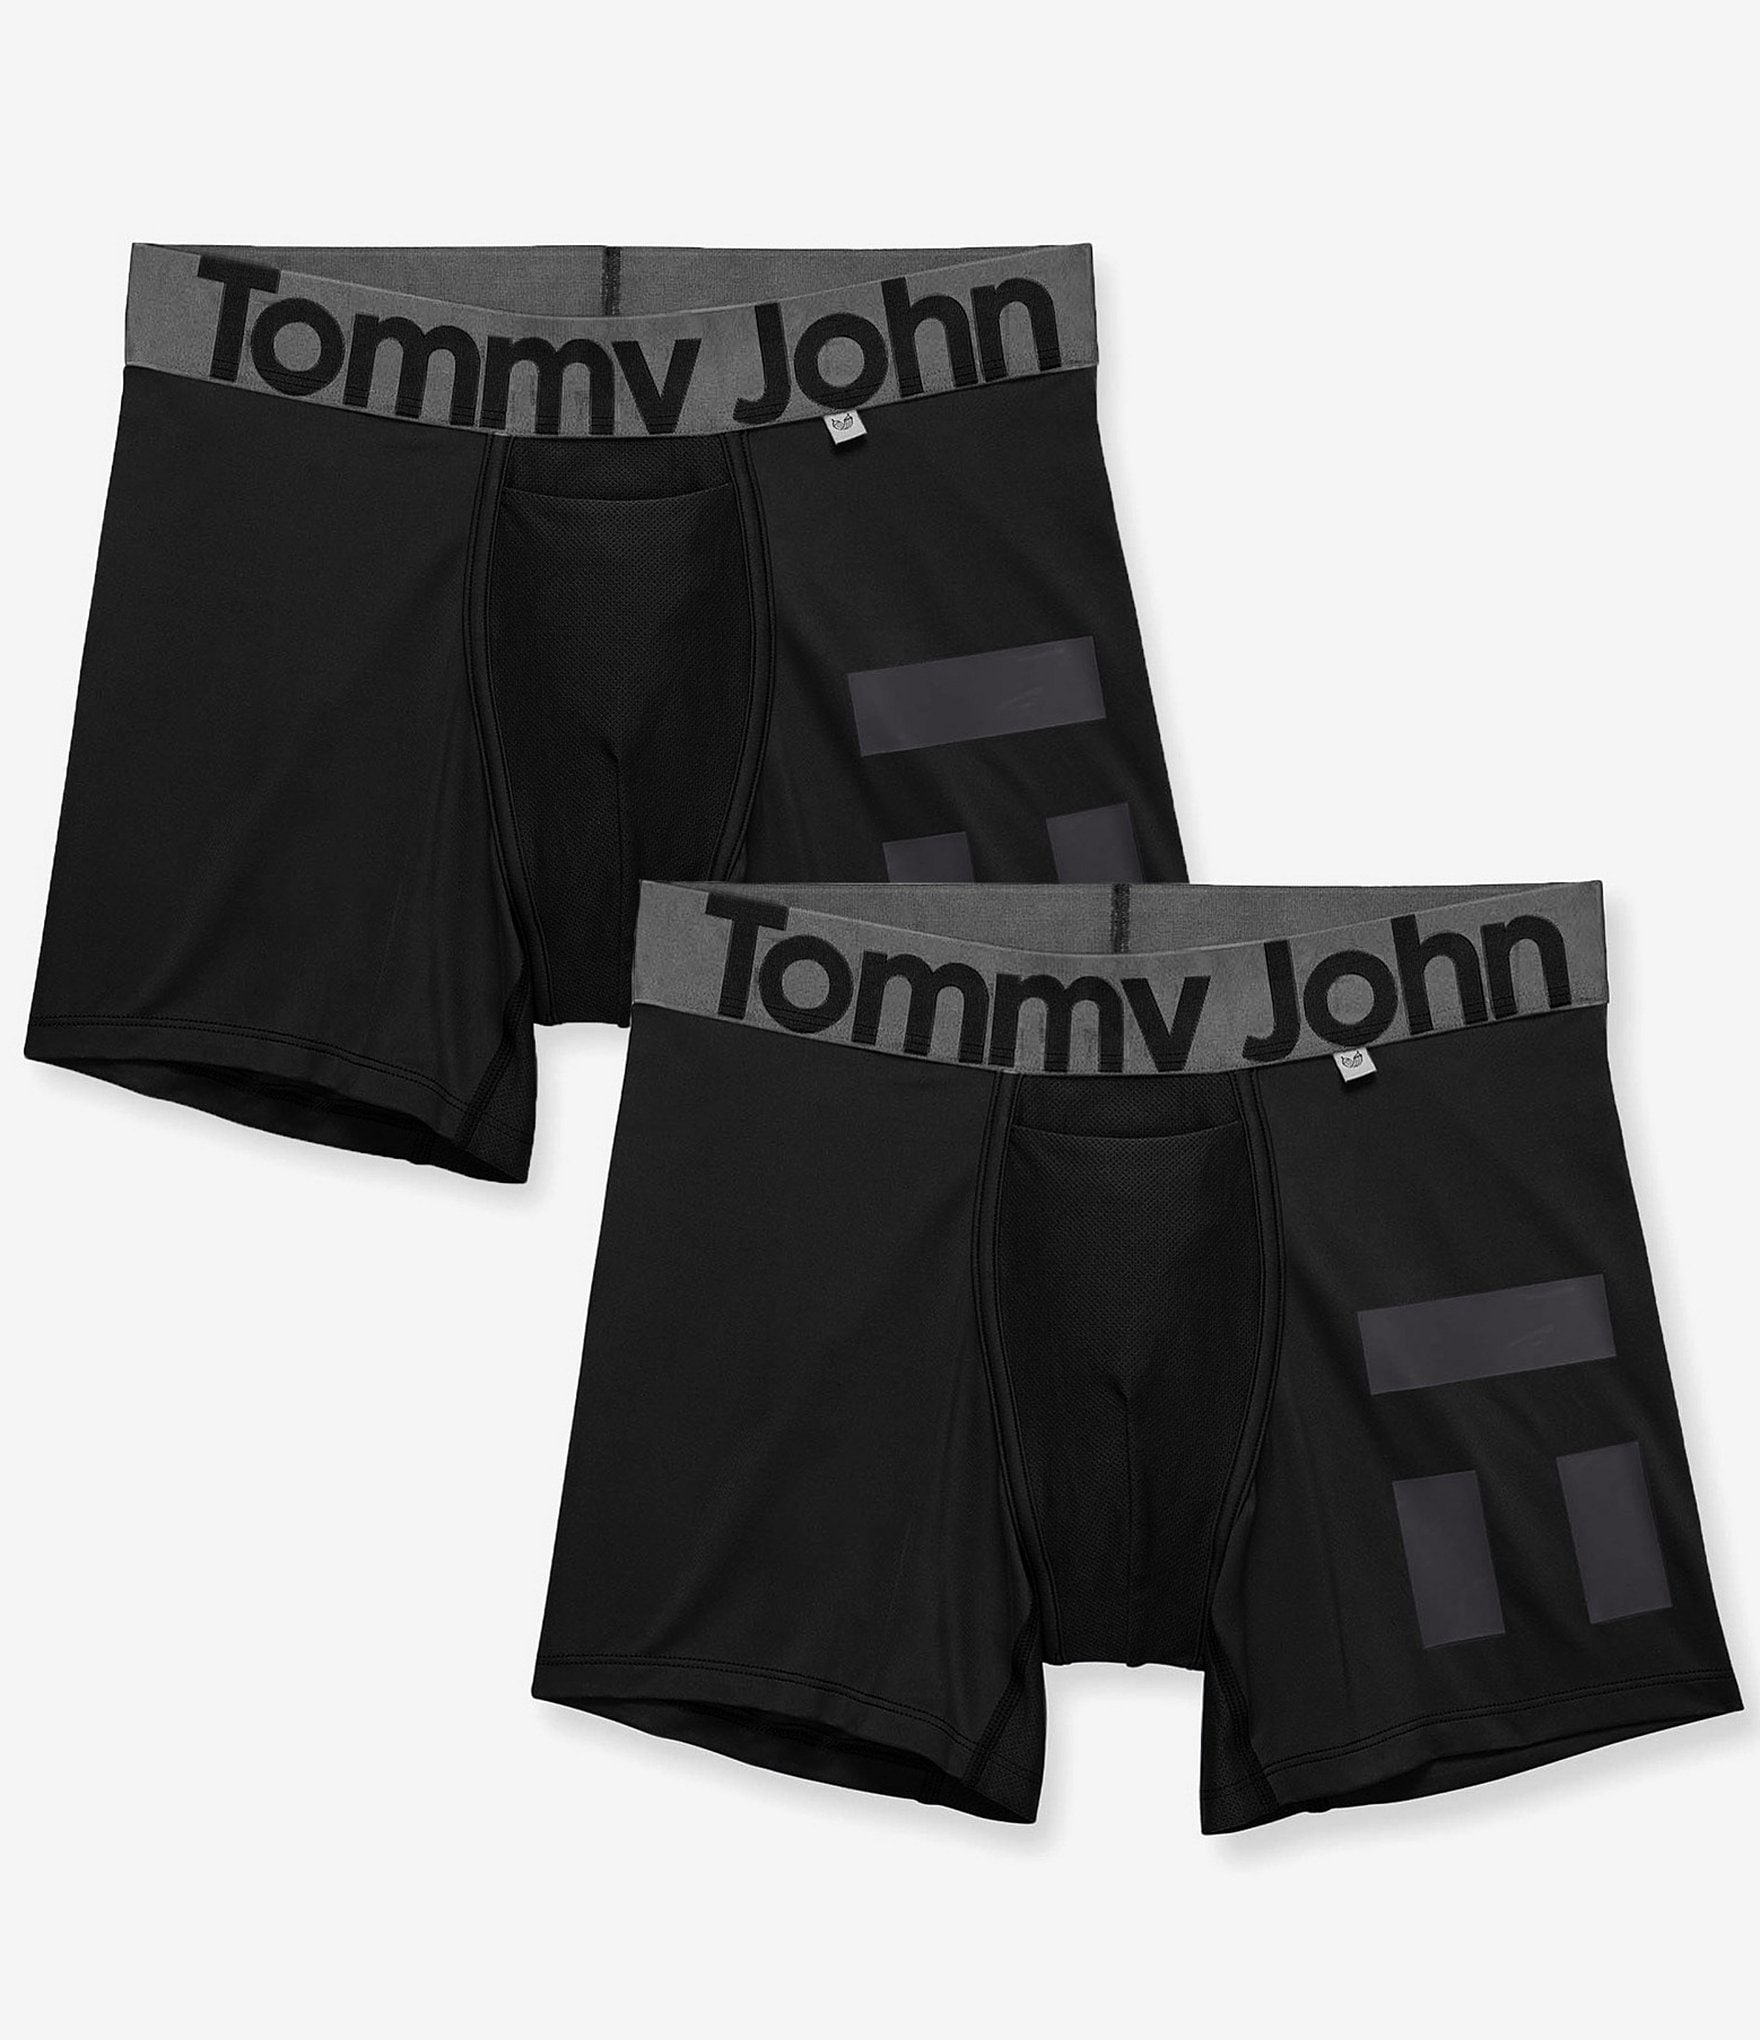 Tommy John Second Skin 6 Inseam Boxer Briefs